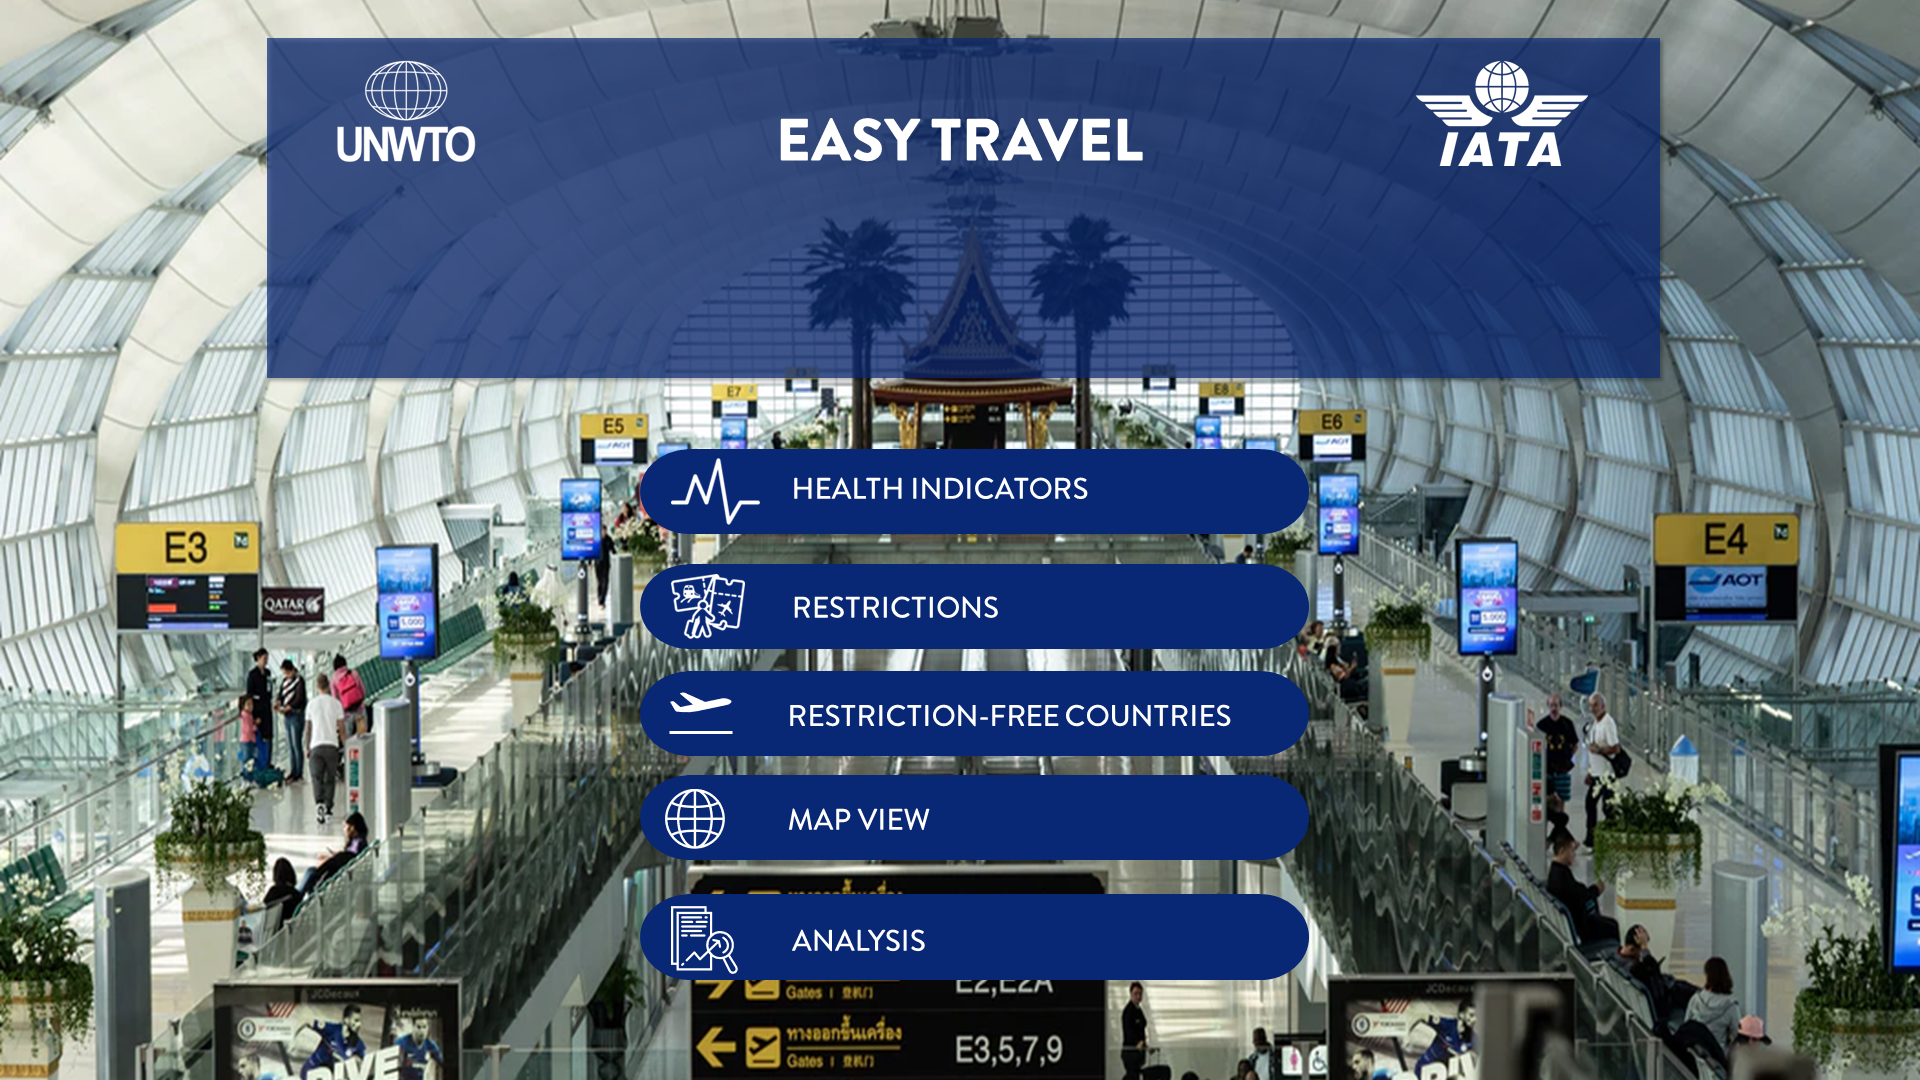 Mise en place de Travel Tracker pour renforcer la confiance chez les voyageurs